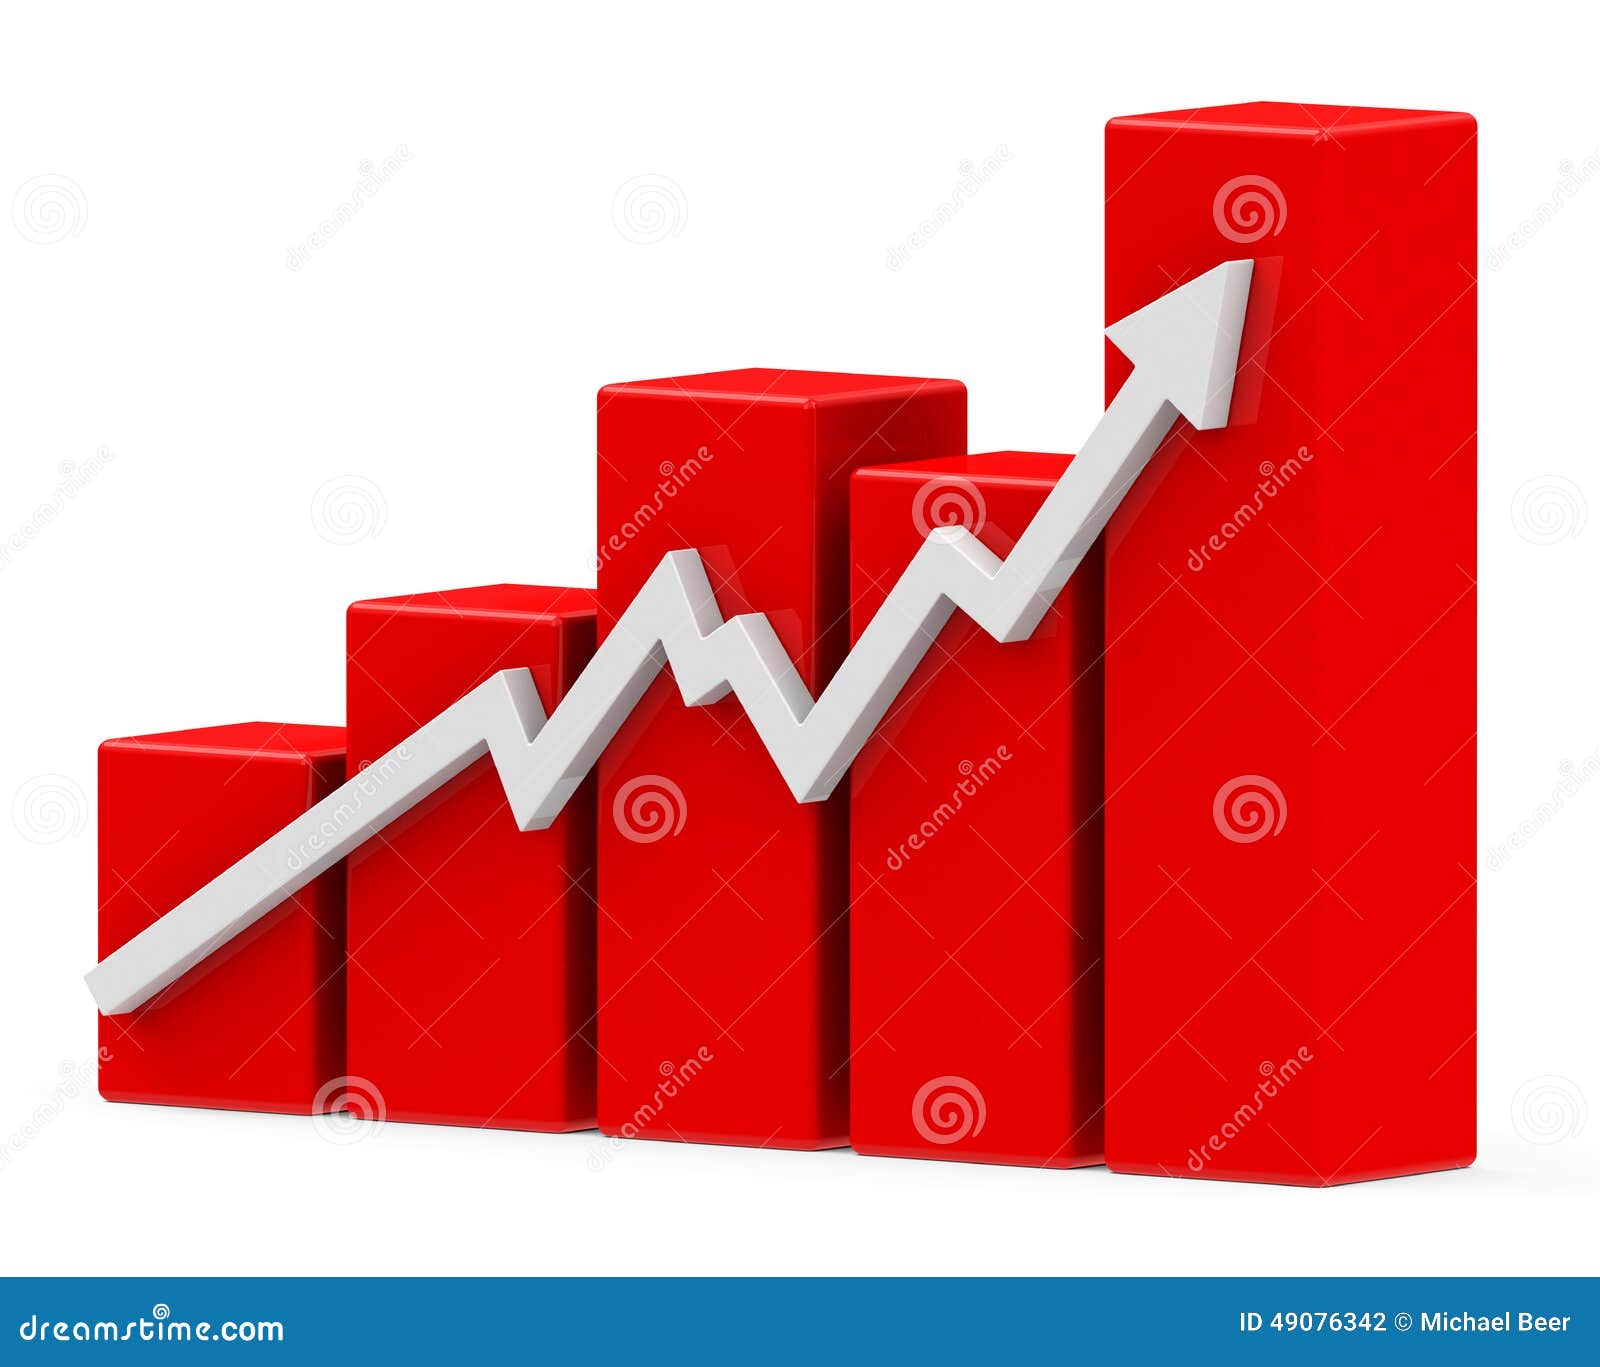 Ключ ставка. Диаграмма роста. Диаграмма роста без фона. Рост дохода иконка. Увеличение прибыли иконка.